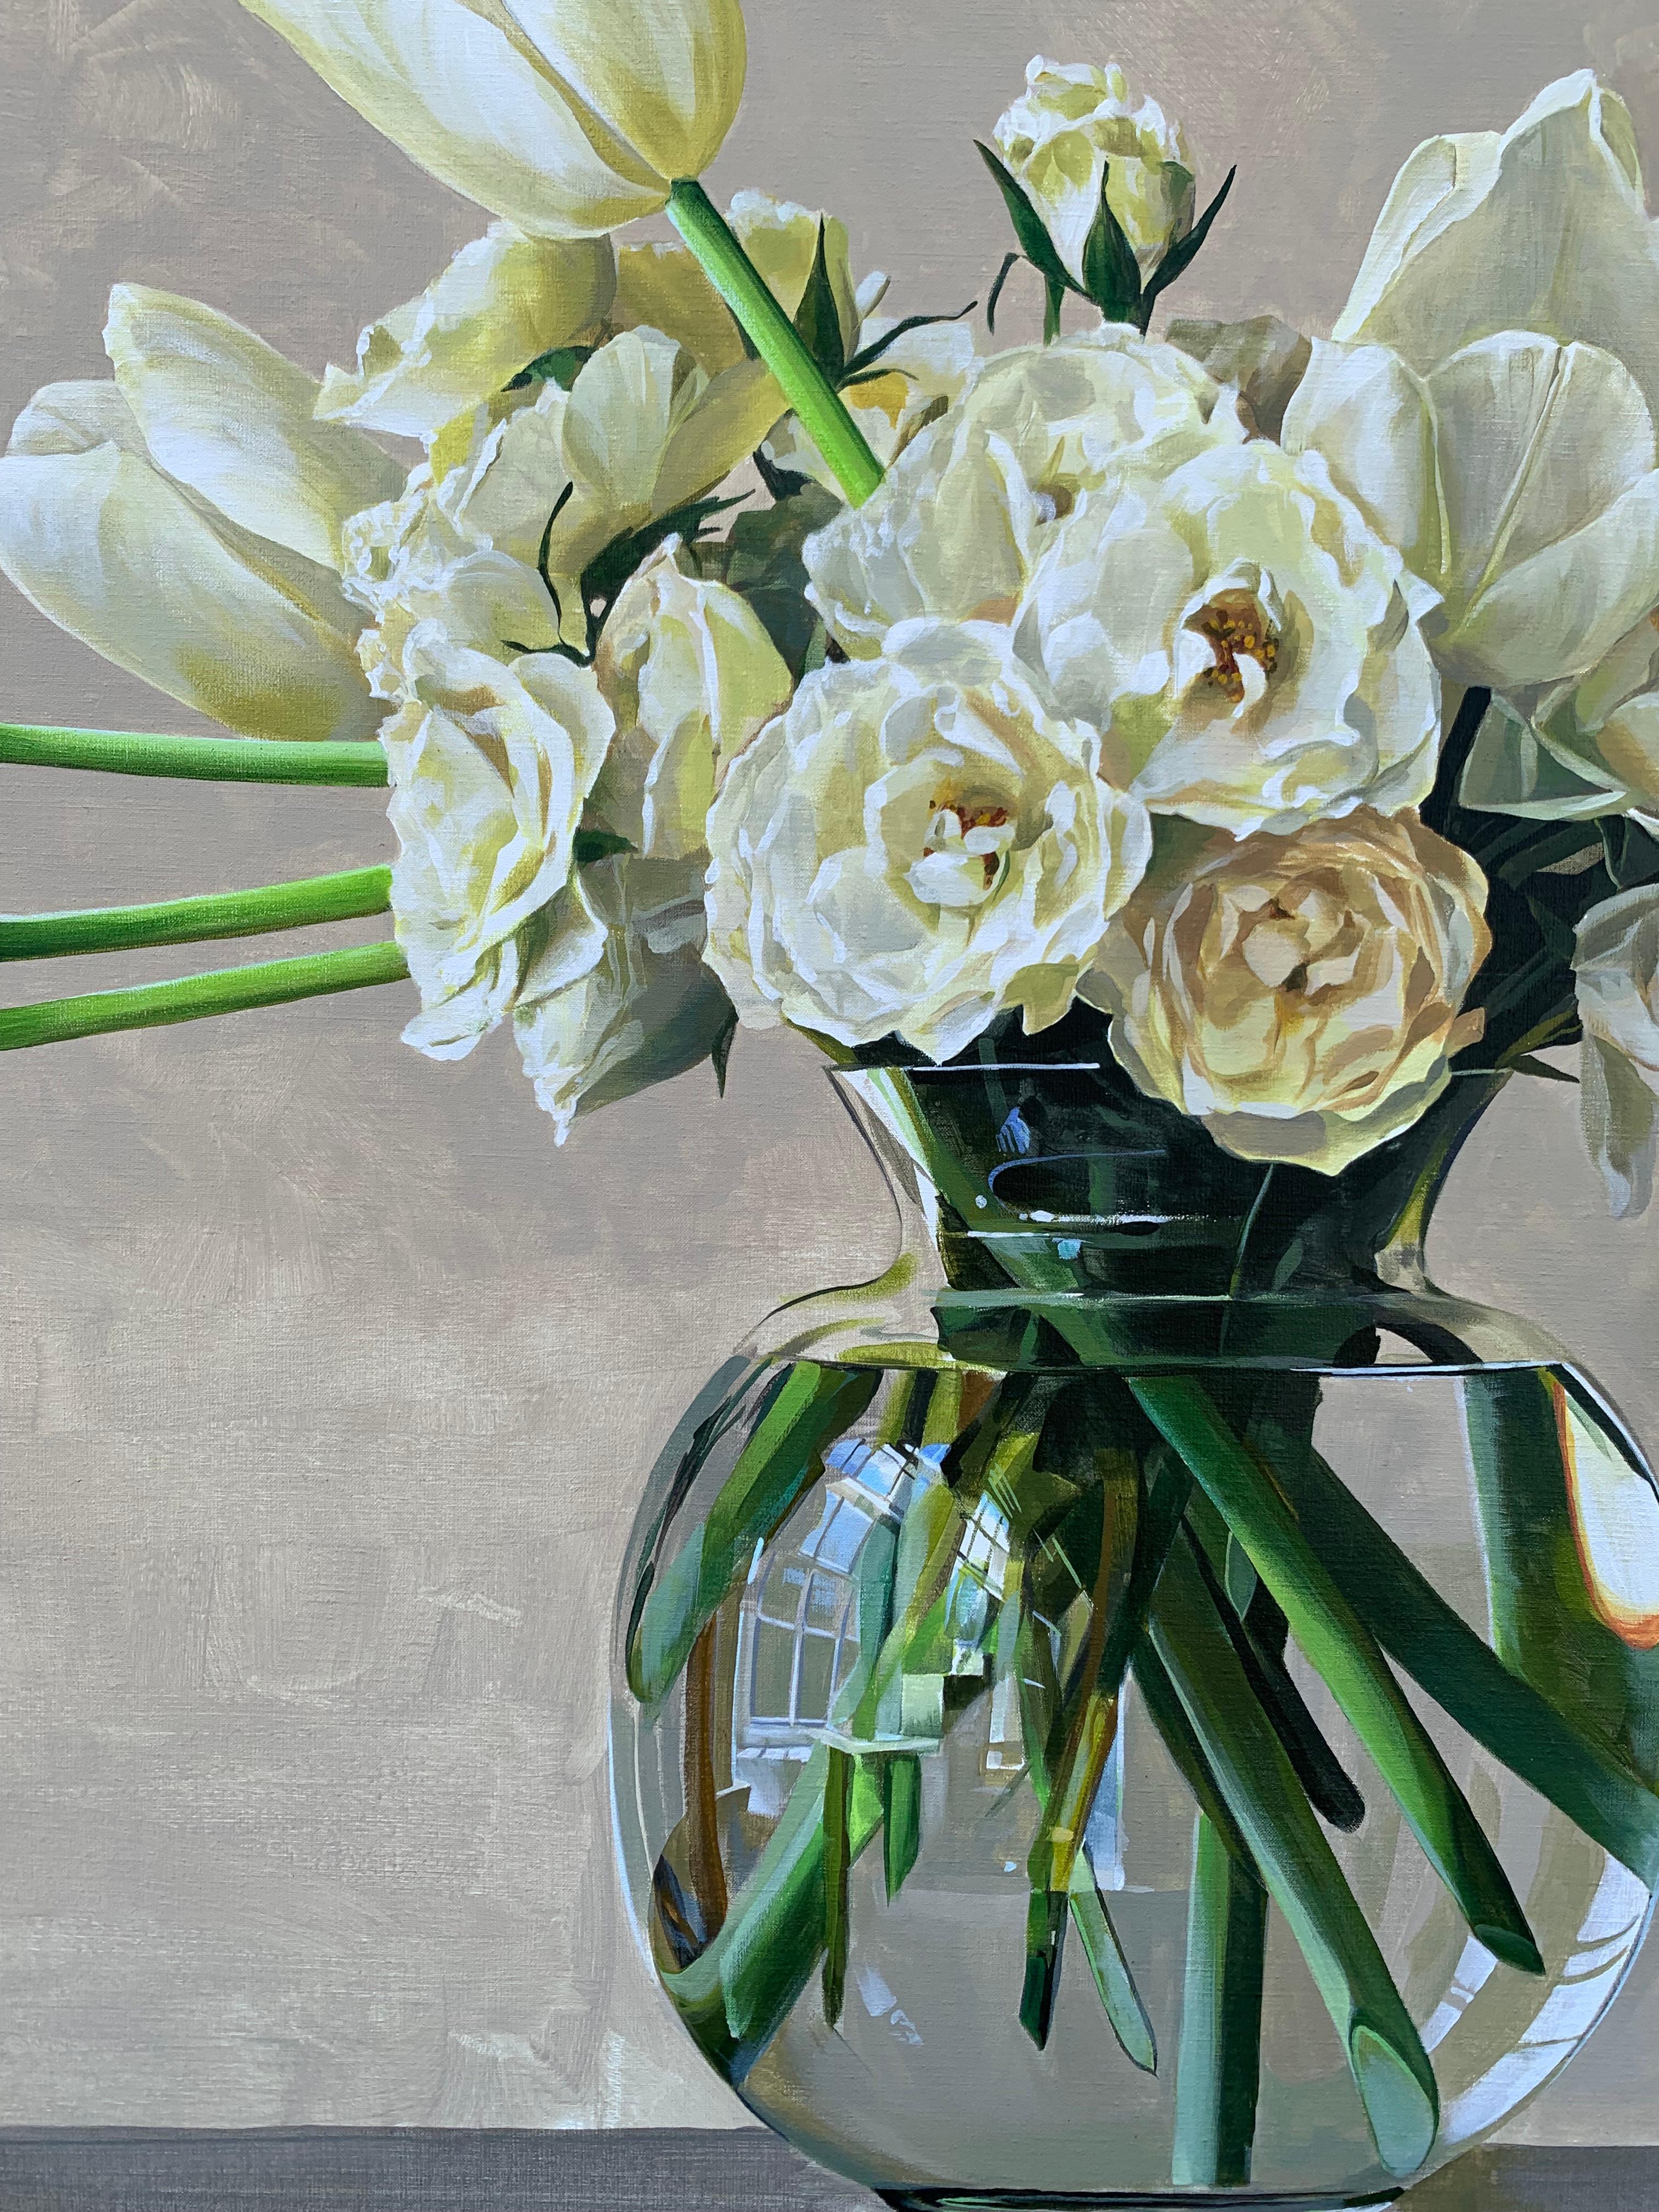 Beige & White Flowers (floral still life) - Painting by Ben Schonzeit